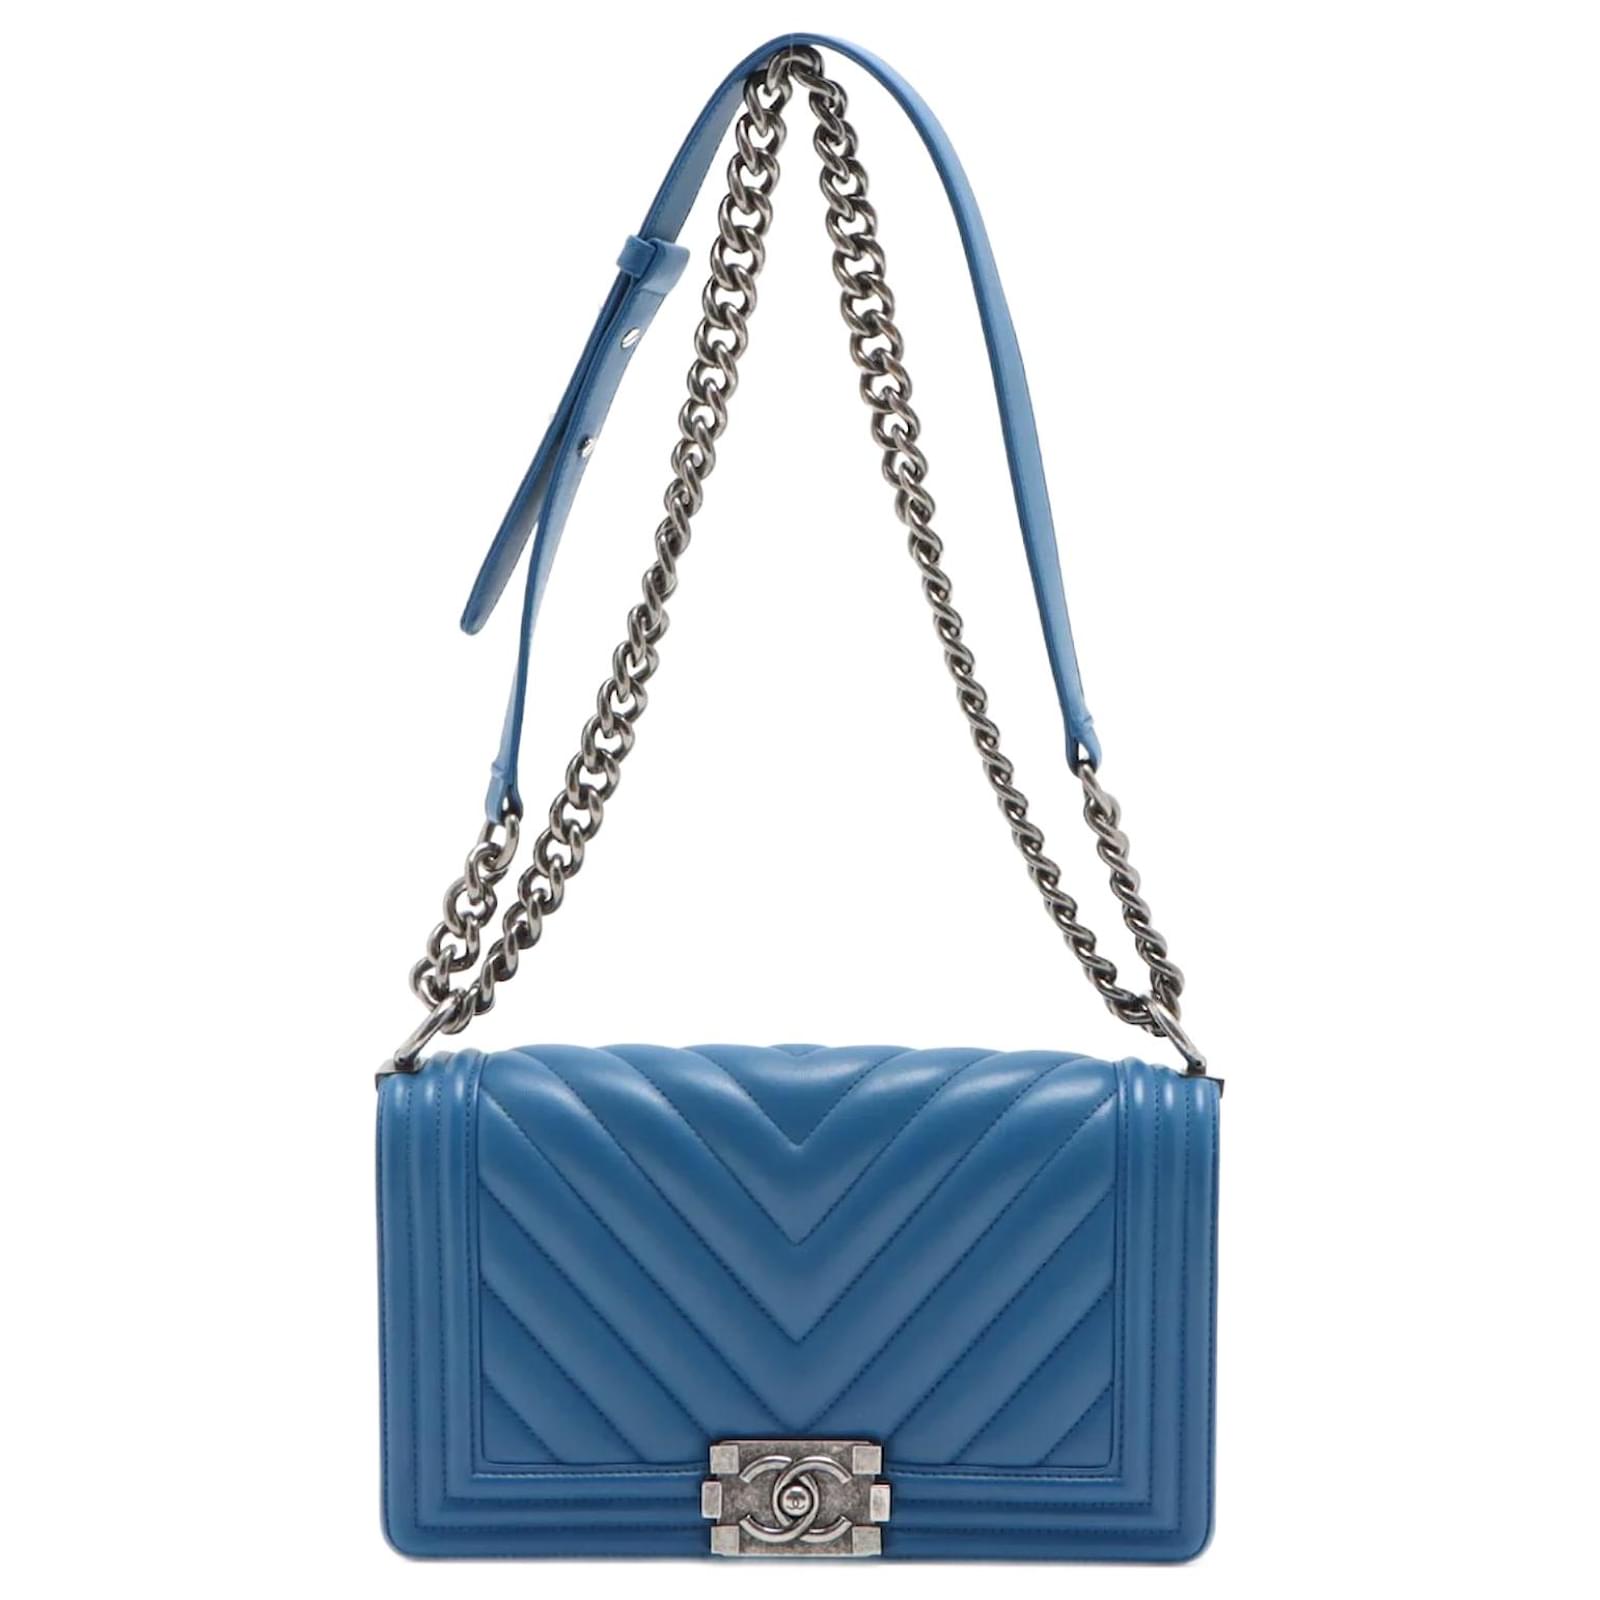 Chanel Blue Medium Boy Bag